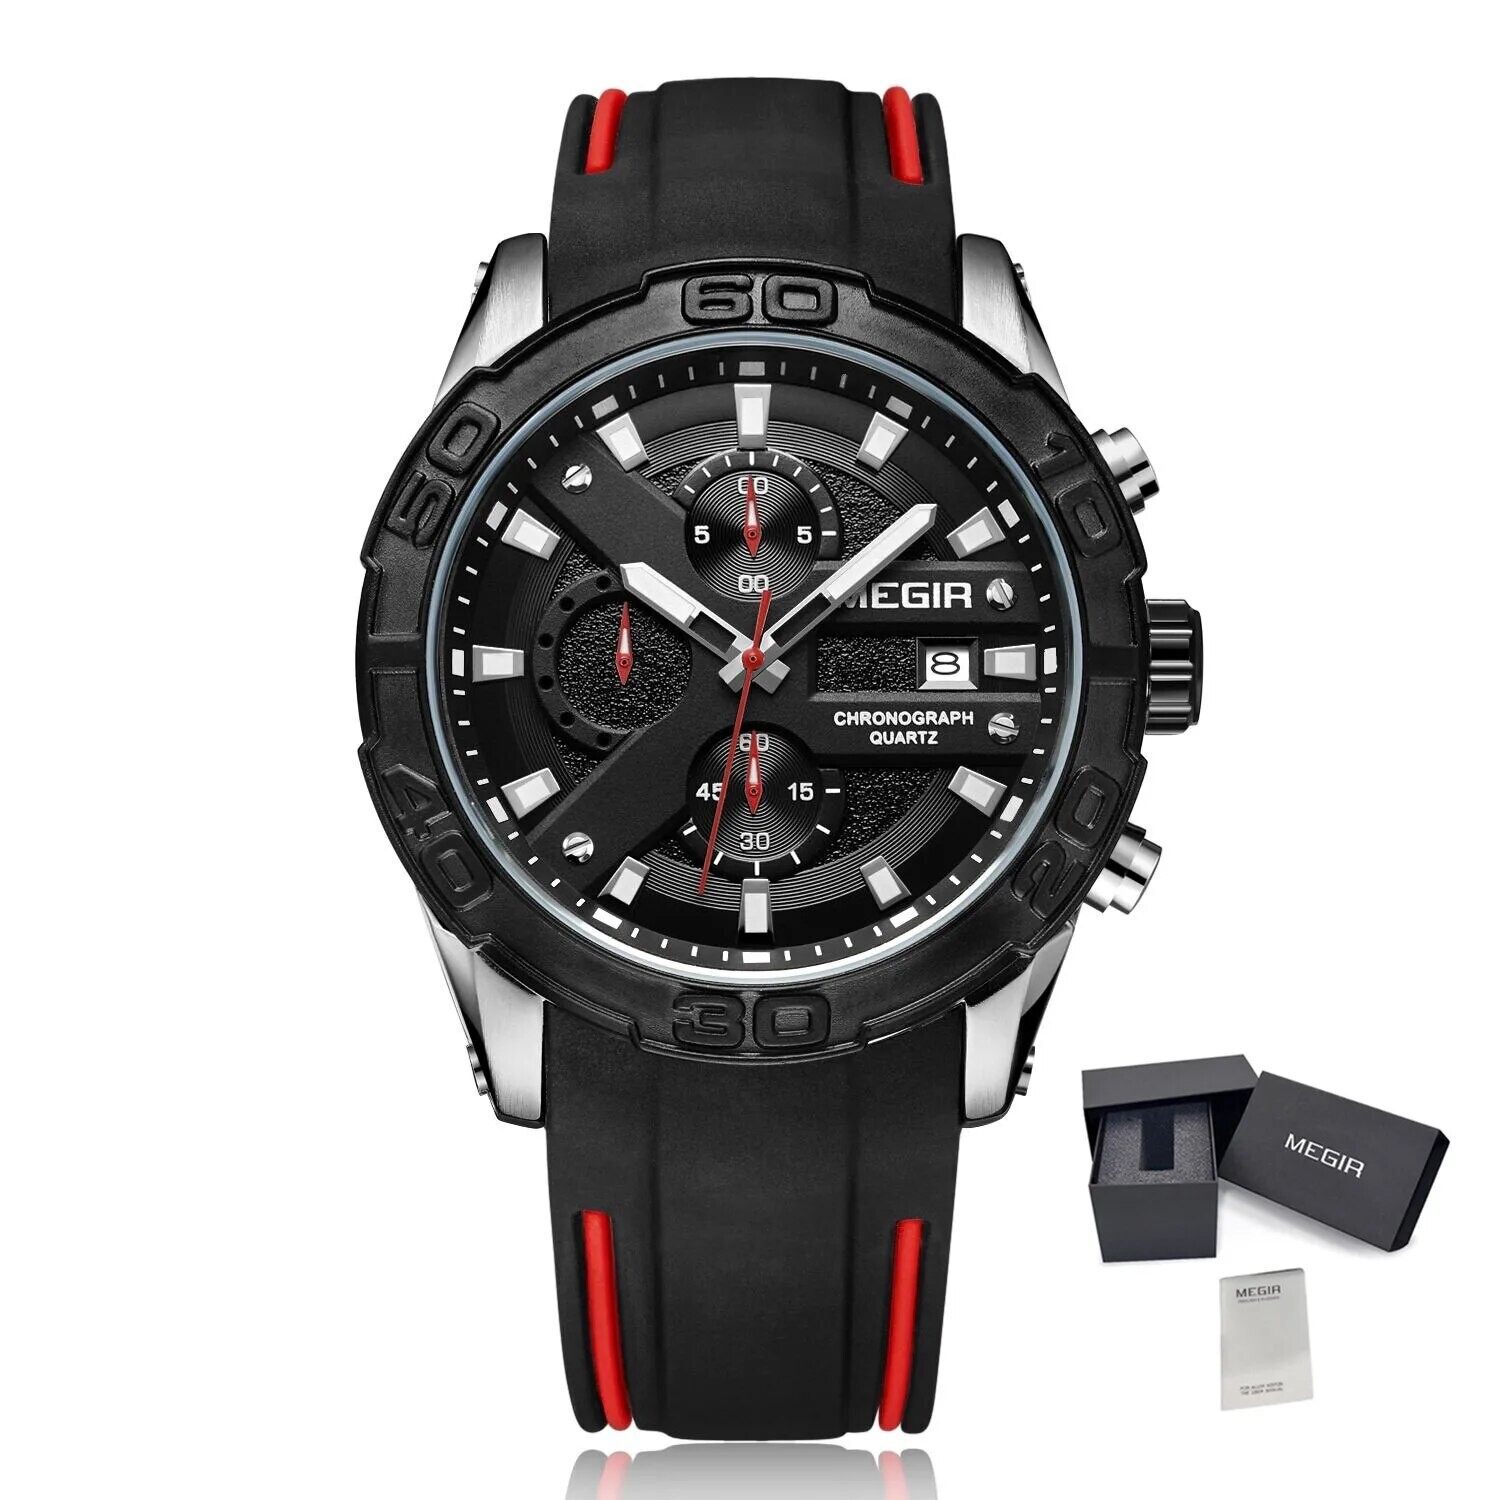 MEGIR Fashion Sport Watches for Men Top Brand Military Quartz Wristwatch Calendar Male Clock Chronograph Montre Homme 2055, Color: Silver Black